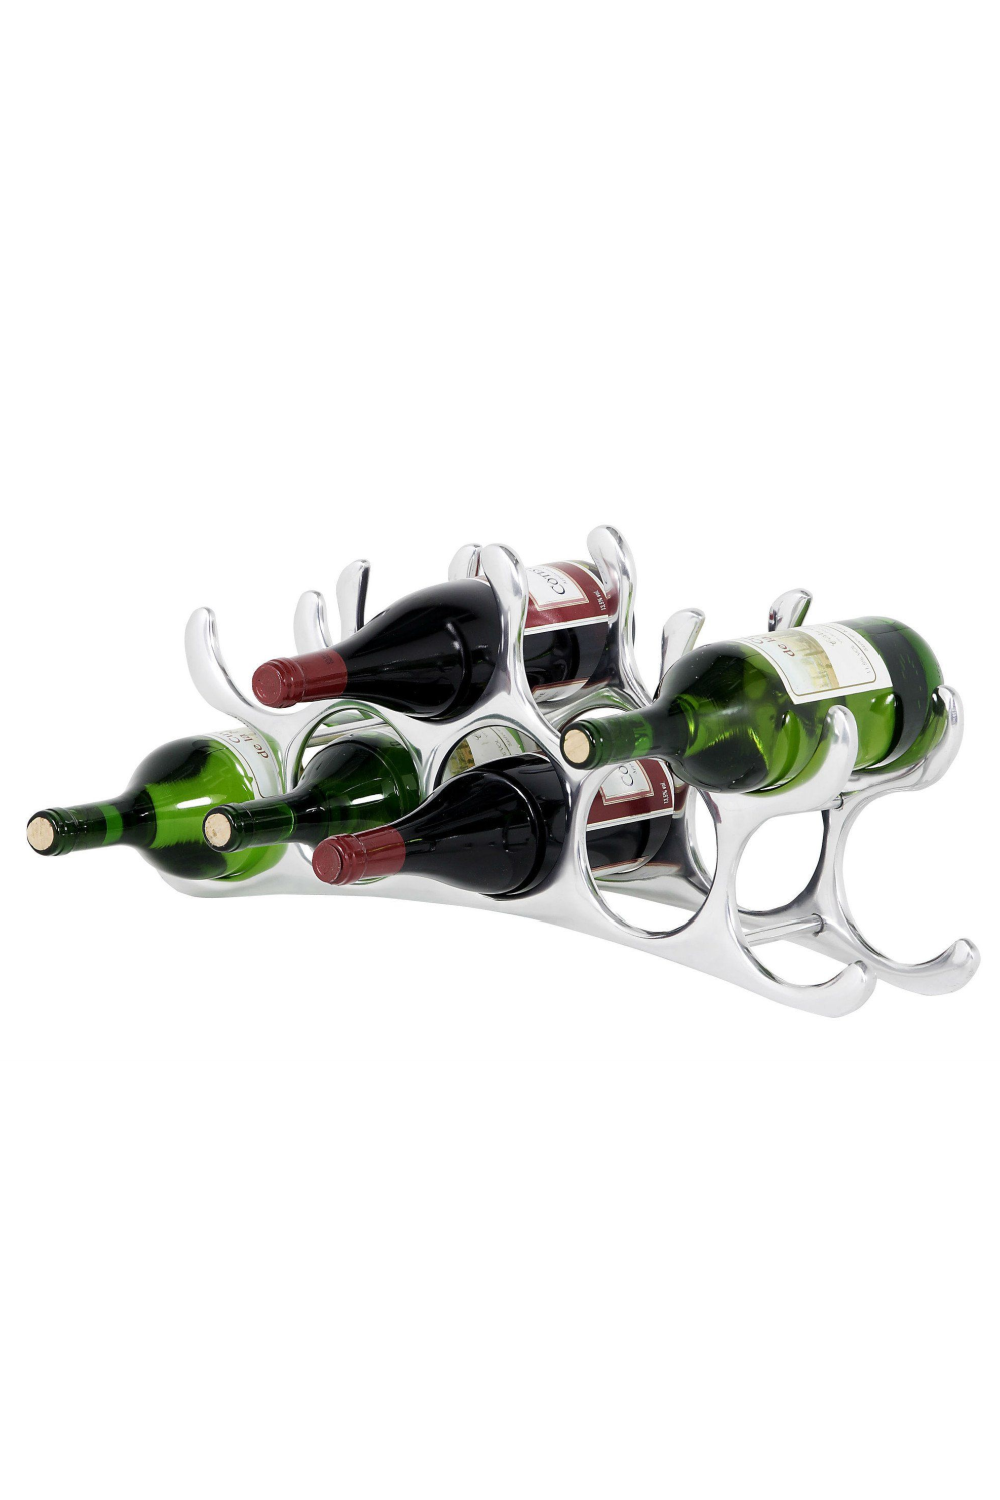 9 Bottles Wine Rack | Eichholtz | #1 Eichholtz Retailer